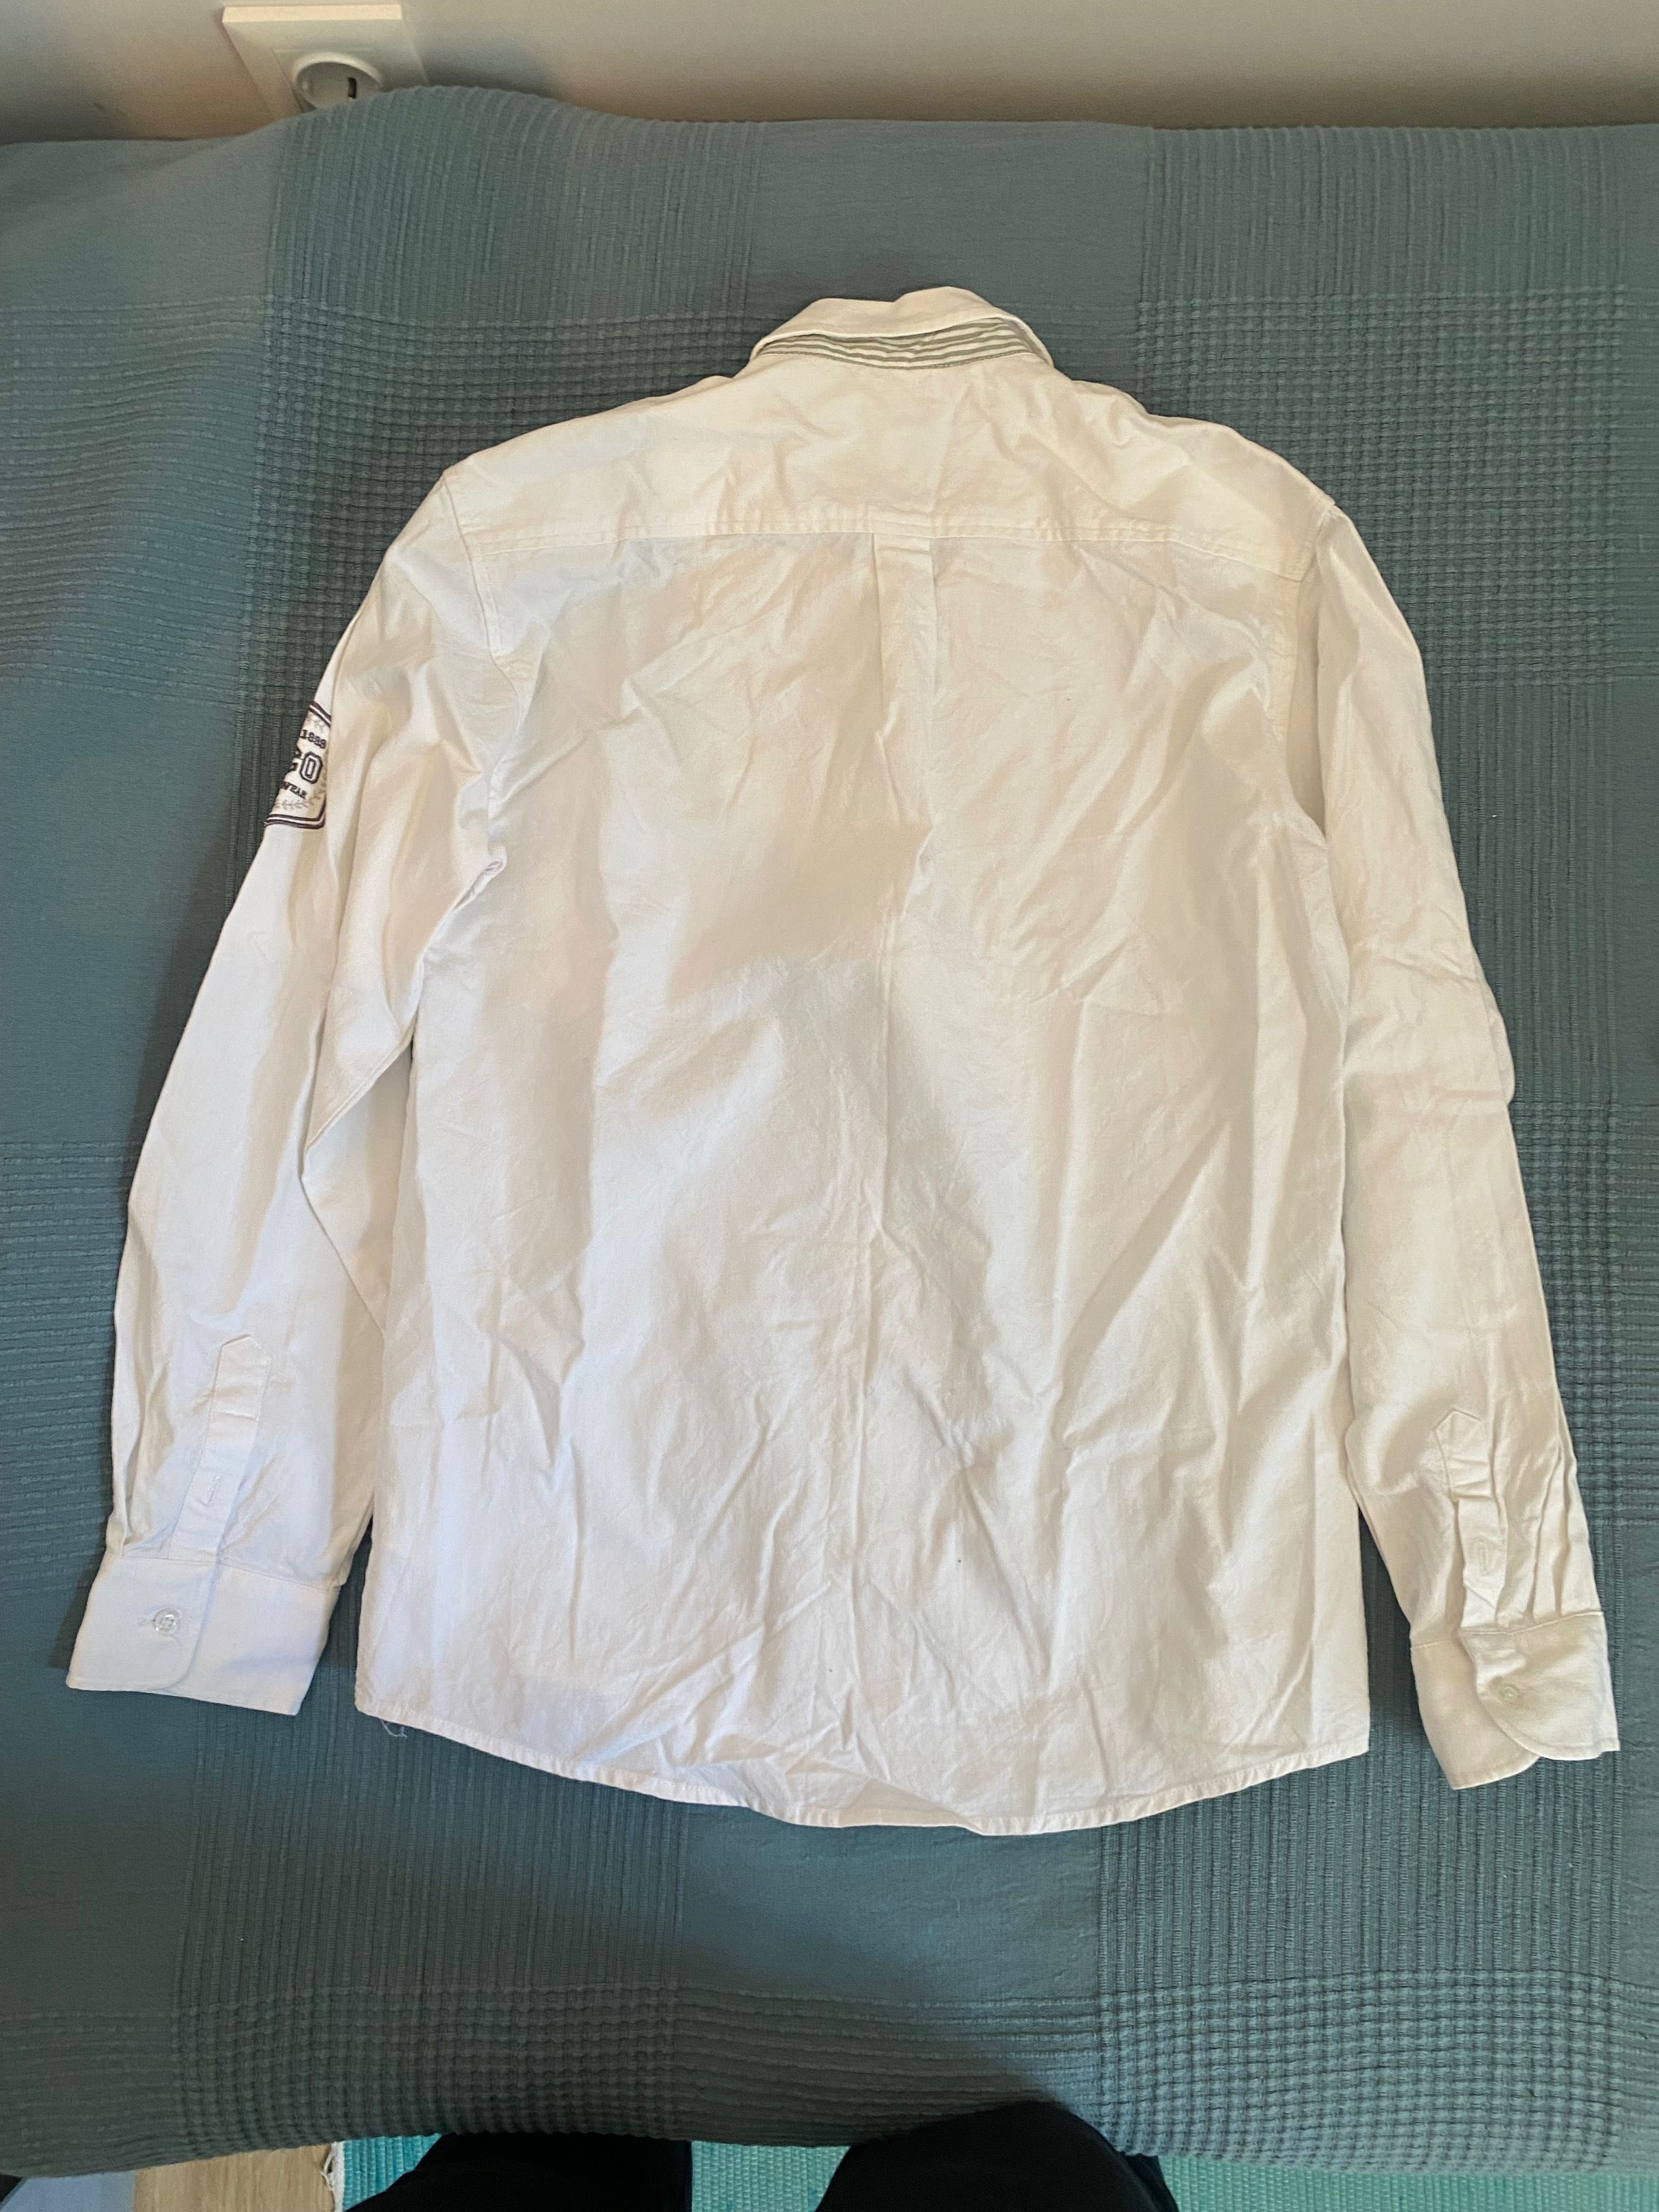 camisa branca Gocco 12 anos, 100% algodão, muito boa apesar de usada